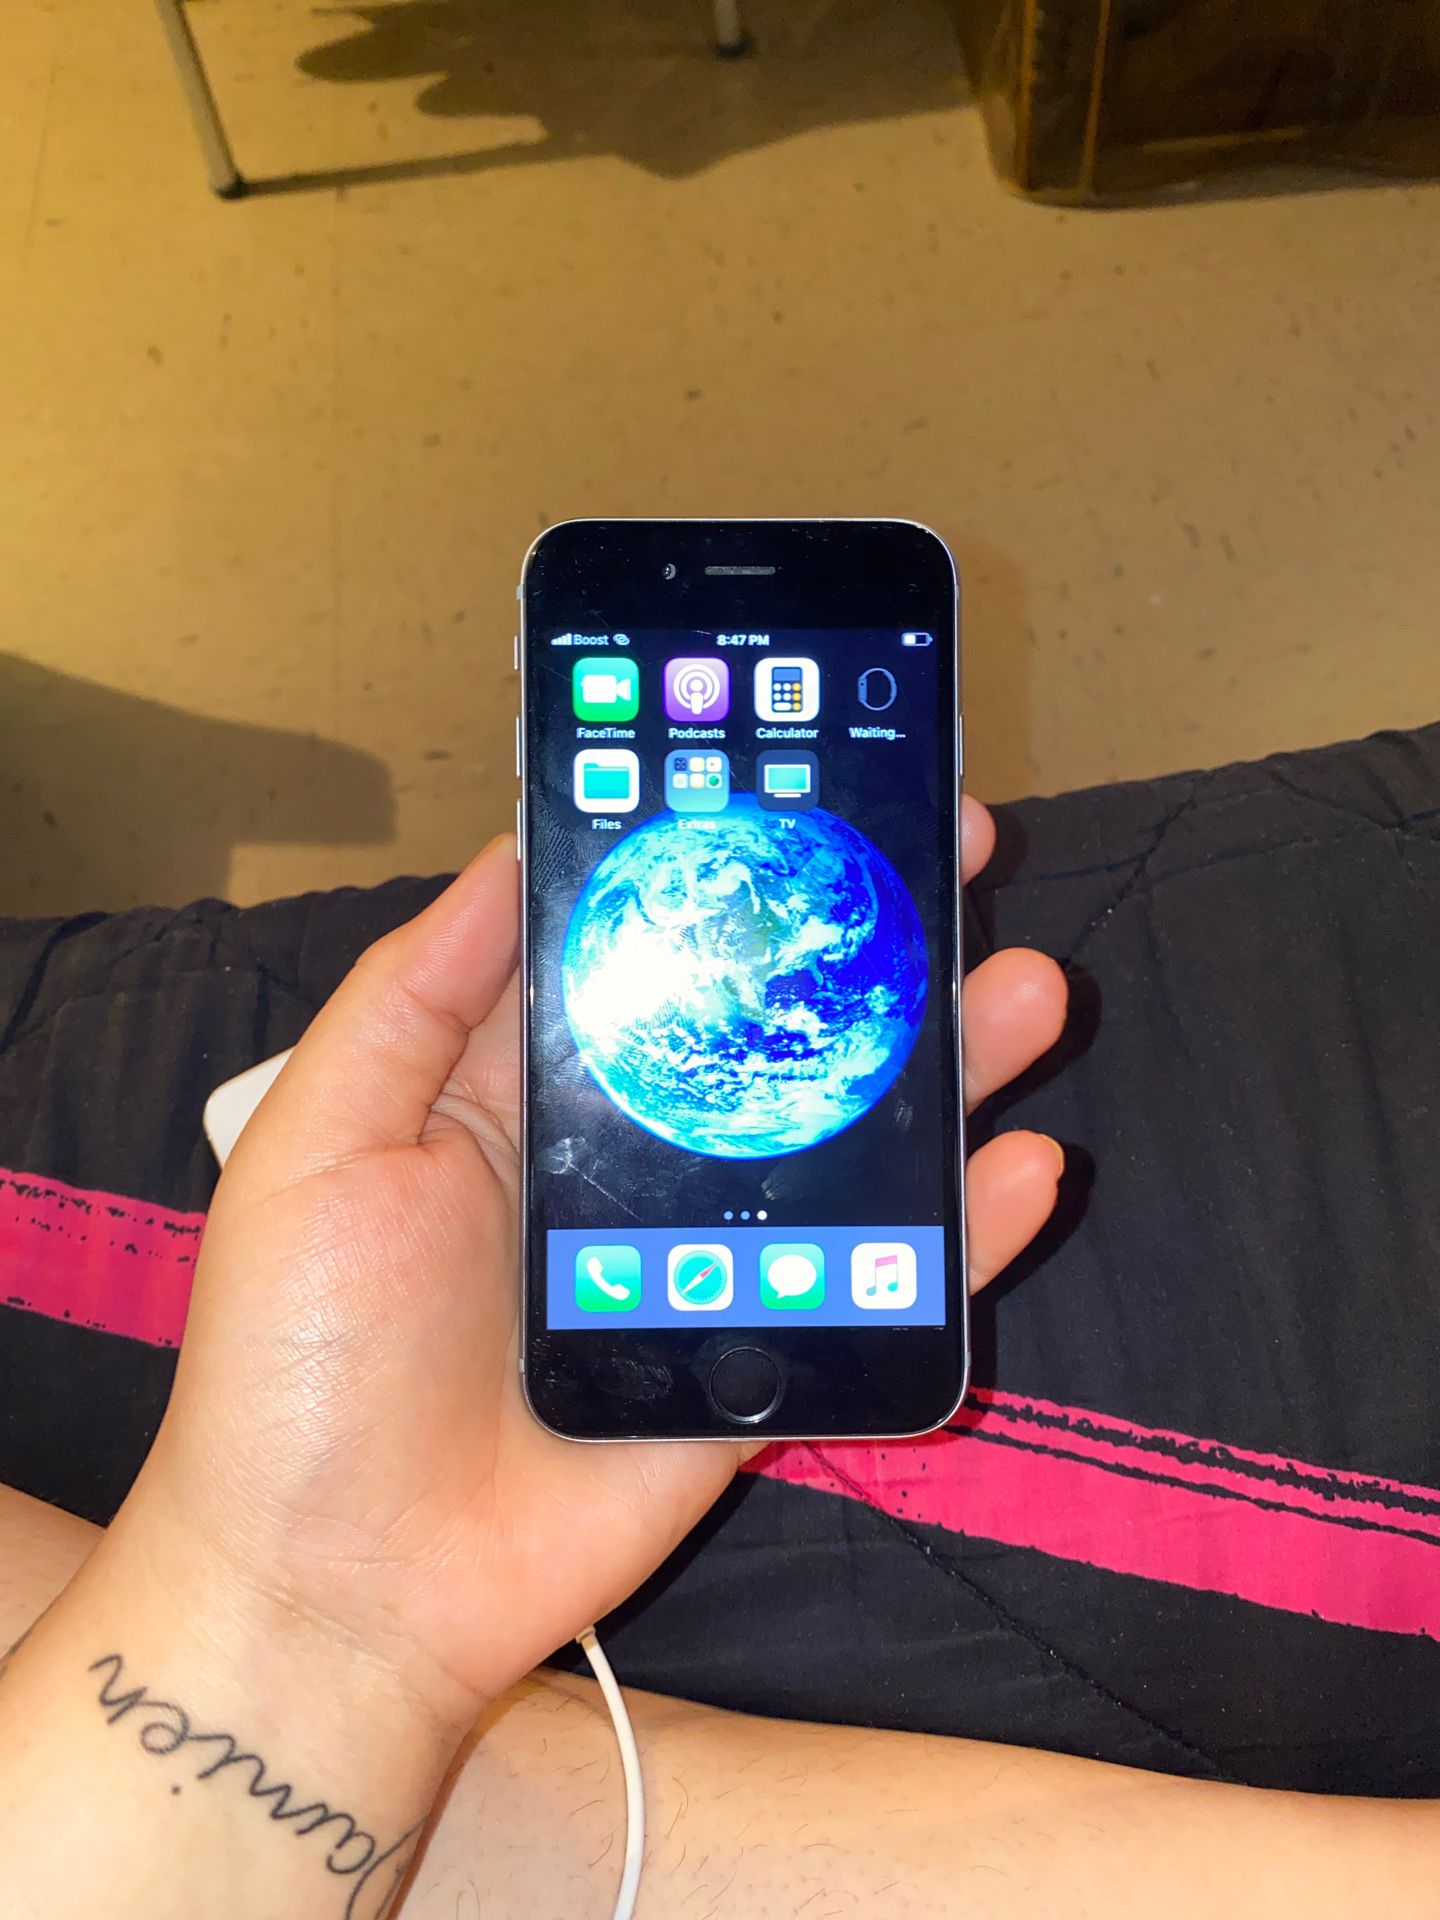 iPhone 6 16gb unlocked